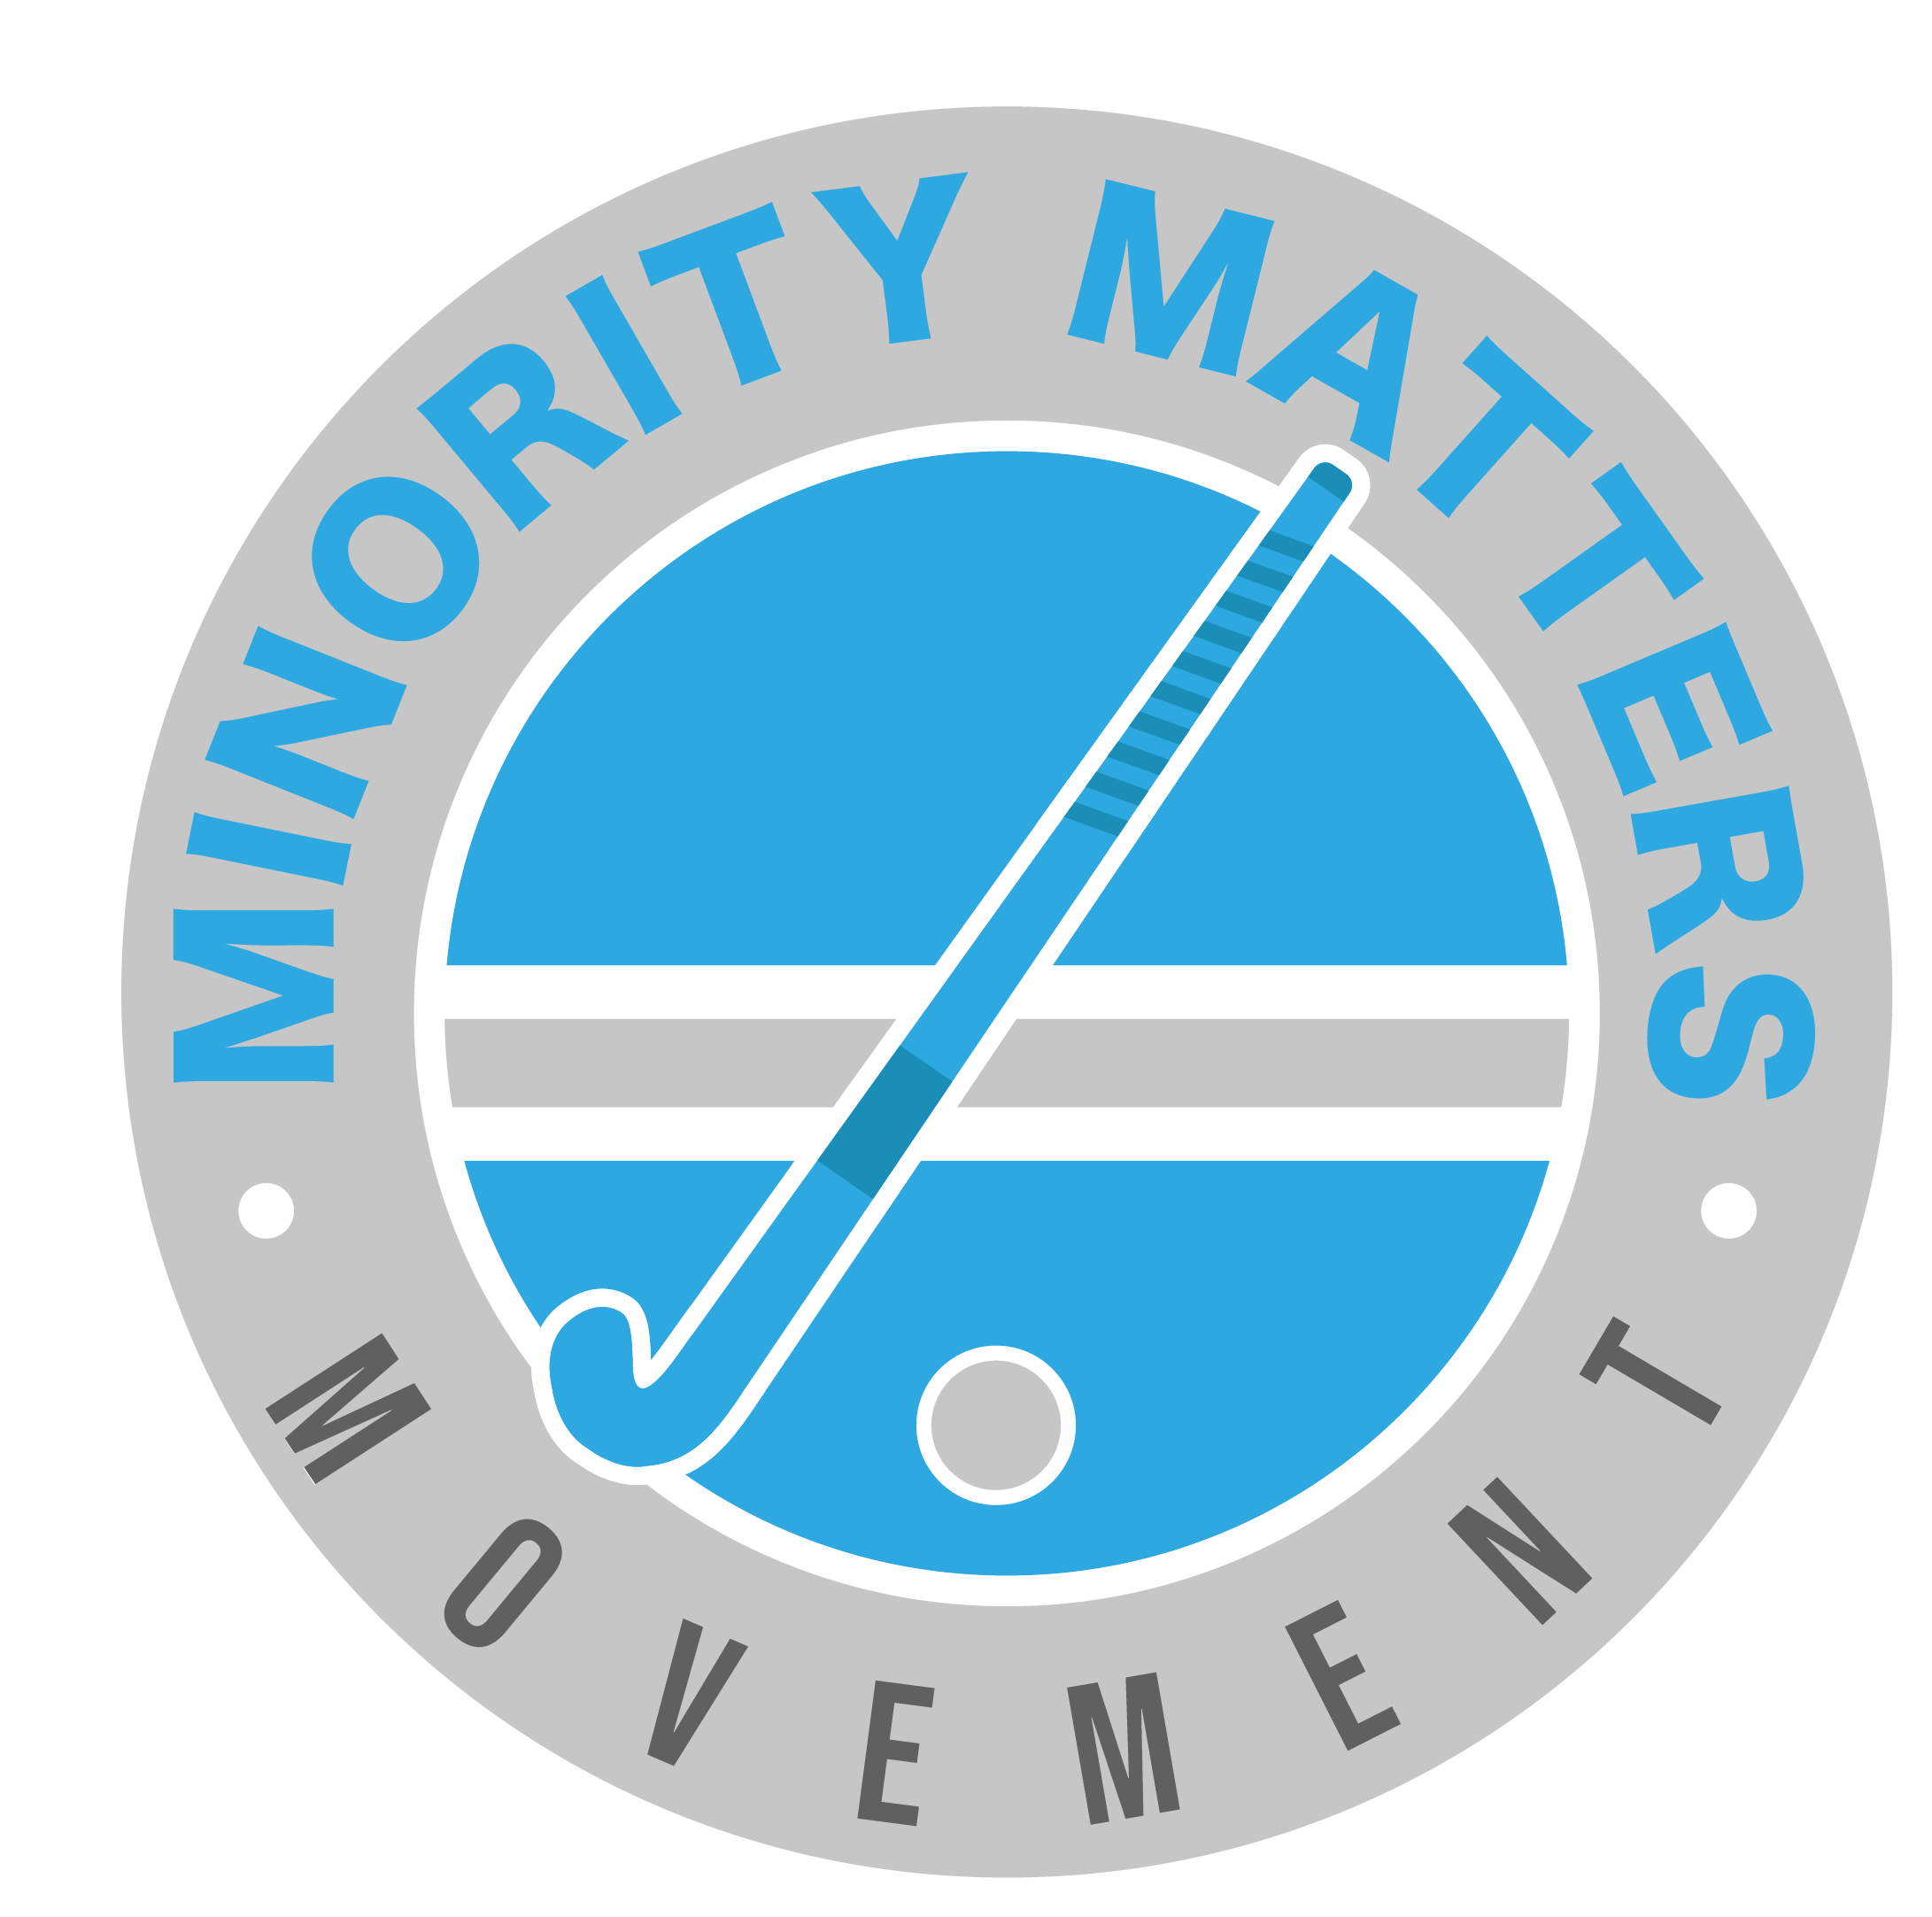 Minority Matters Movement (2)